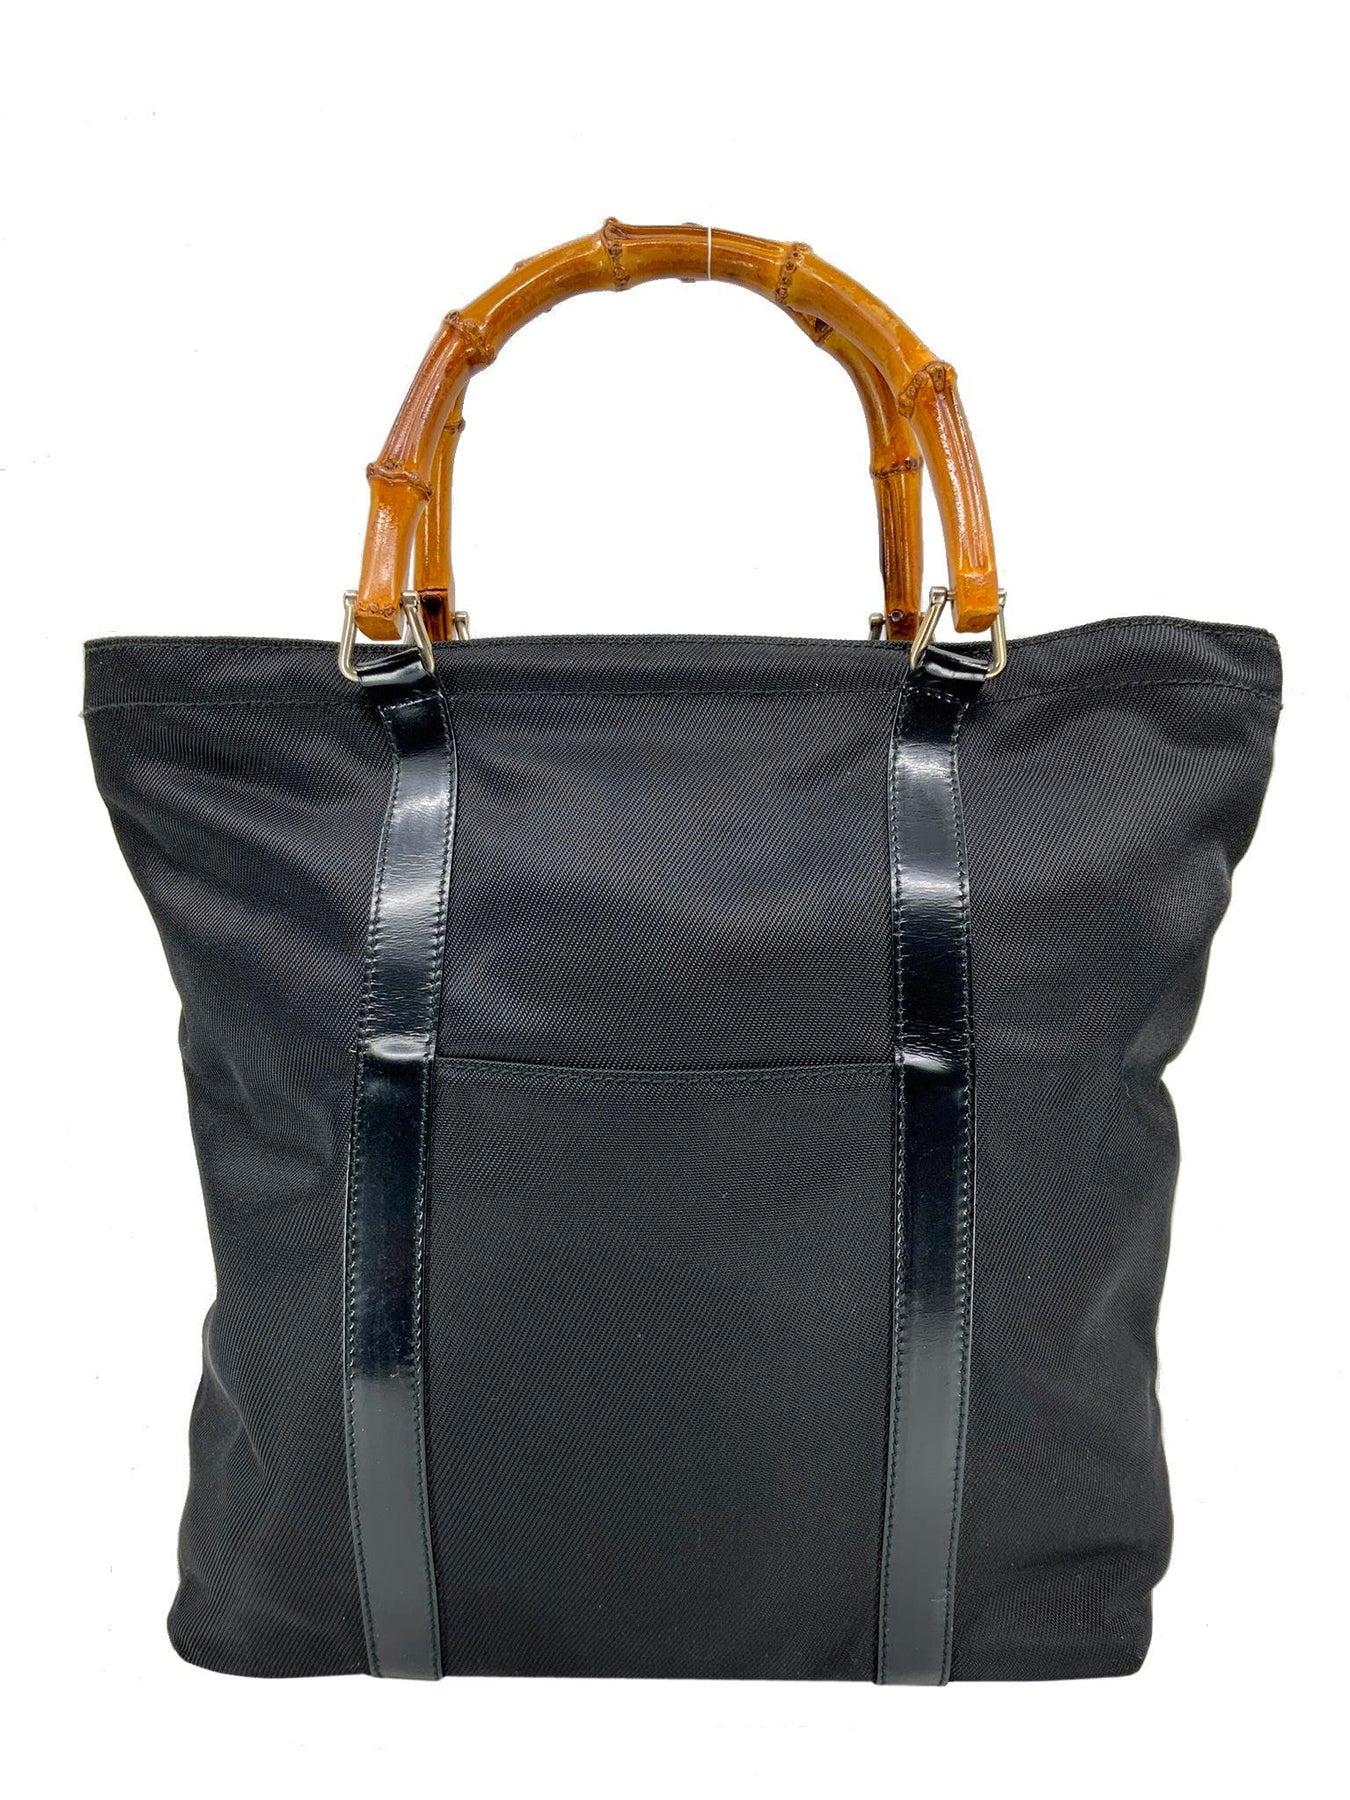 Gucci Vintage Bamboo Top Handle Handbag in Black